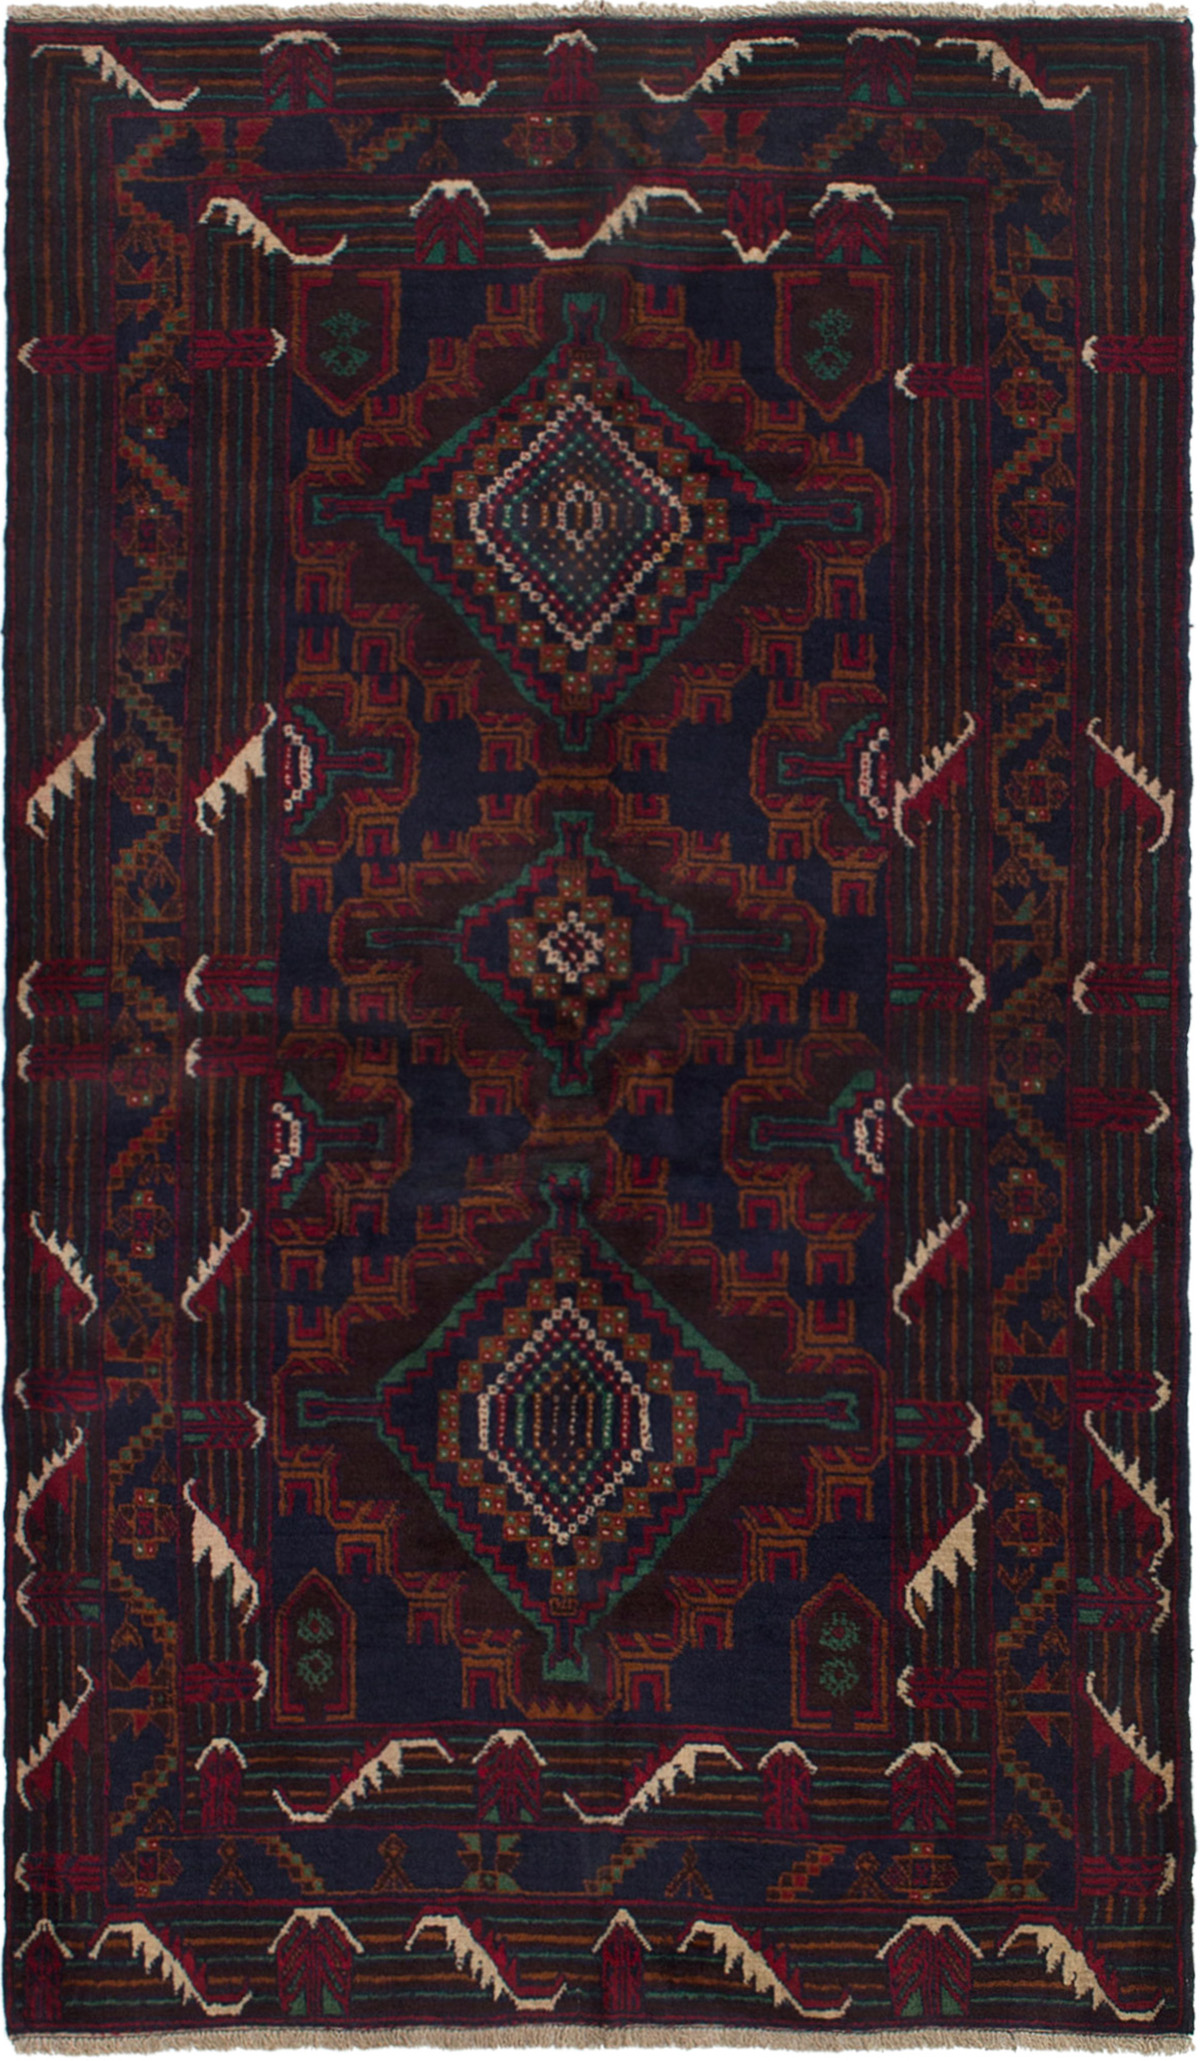 Hand-knotted Kazak Dark Brown, Dark Navy Wool Rug 3'7" x 6'6" Size: 3'7" x 6'6"  